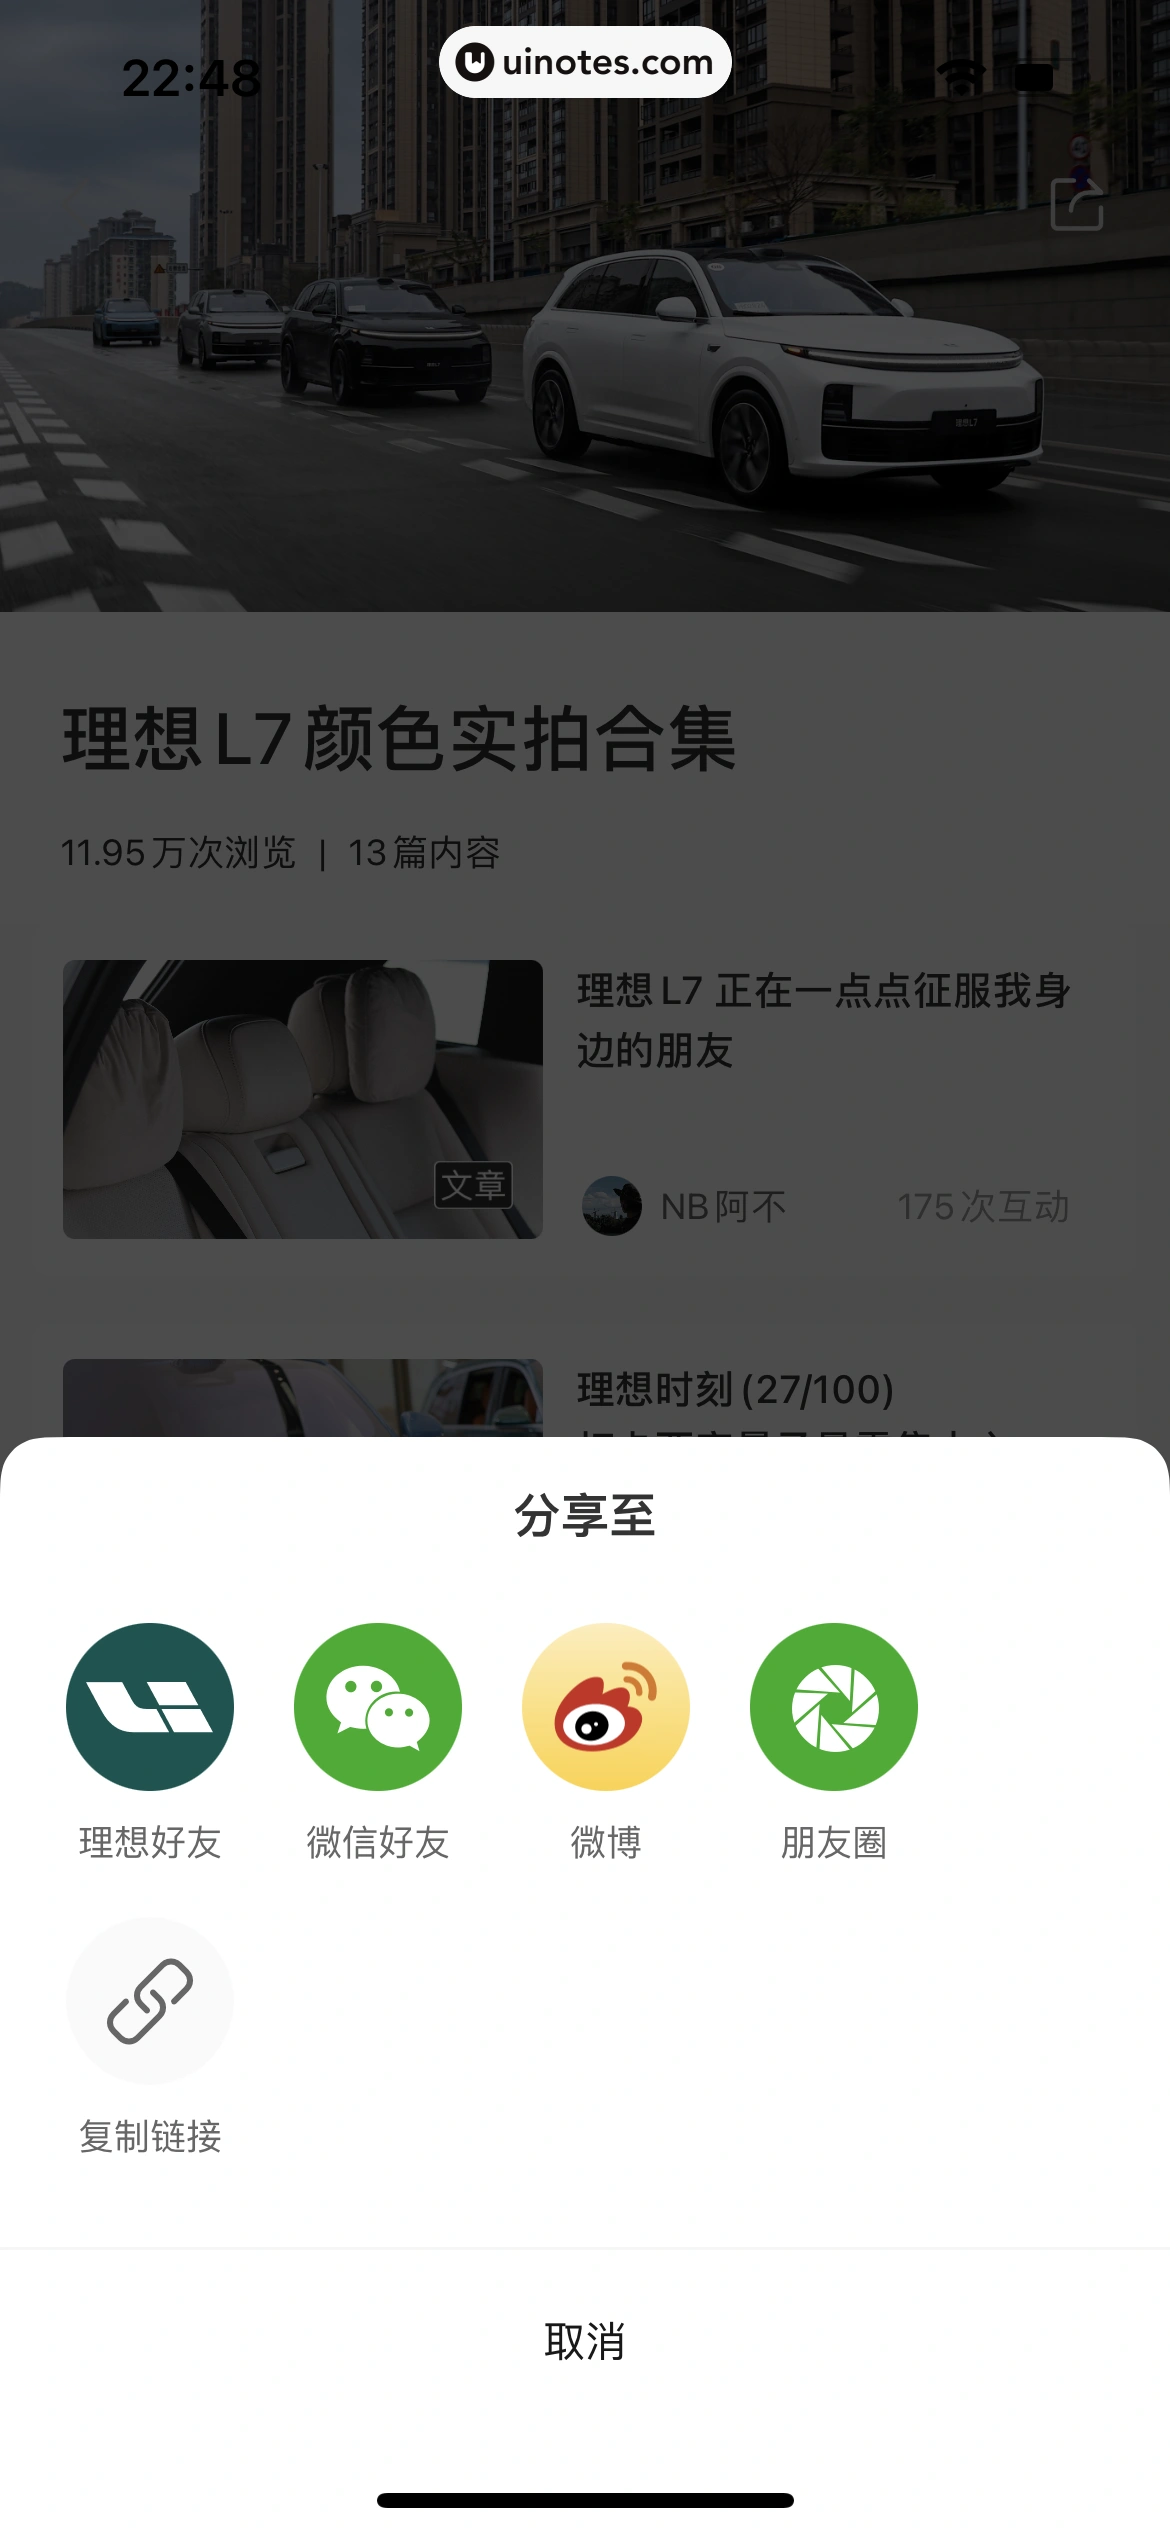 理想汽车 App 截图 053 - UI Notes